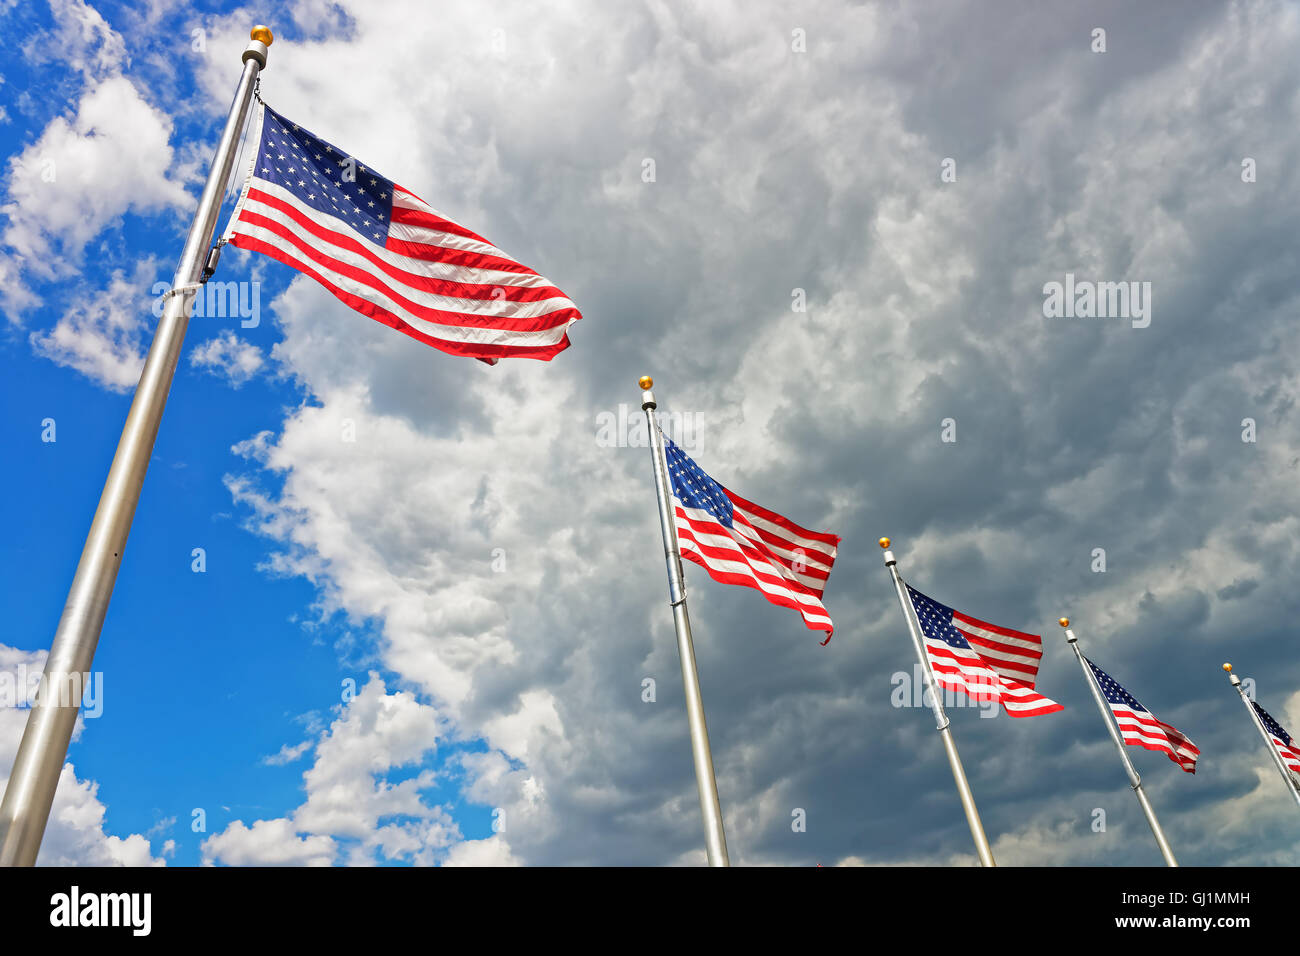 Fotografiert wurden die Flaggen der Vereinigten Staaten von Amerika in Washington D.C., USA. Es ist die Nationalflagge der USA. Es besteht aus 50 Sterne, jeweils für den Staat und 13 Streifen. Stockfoto